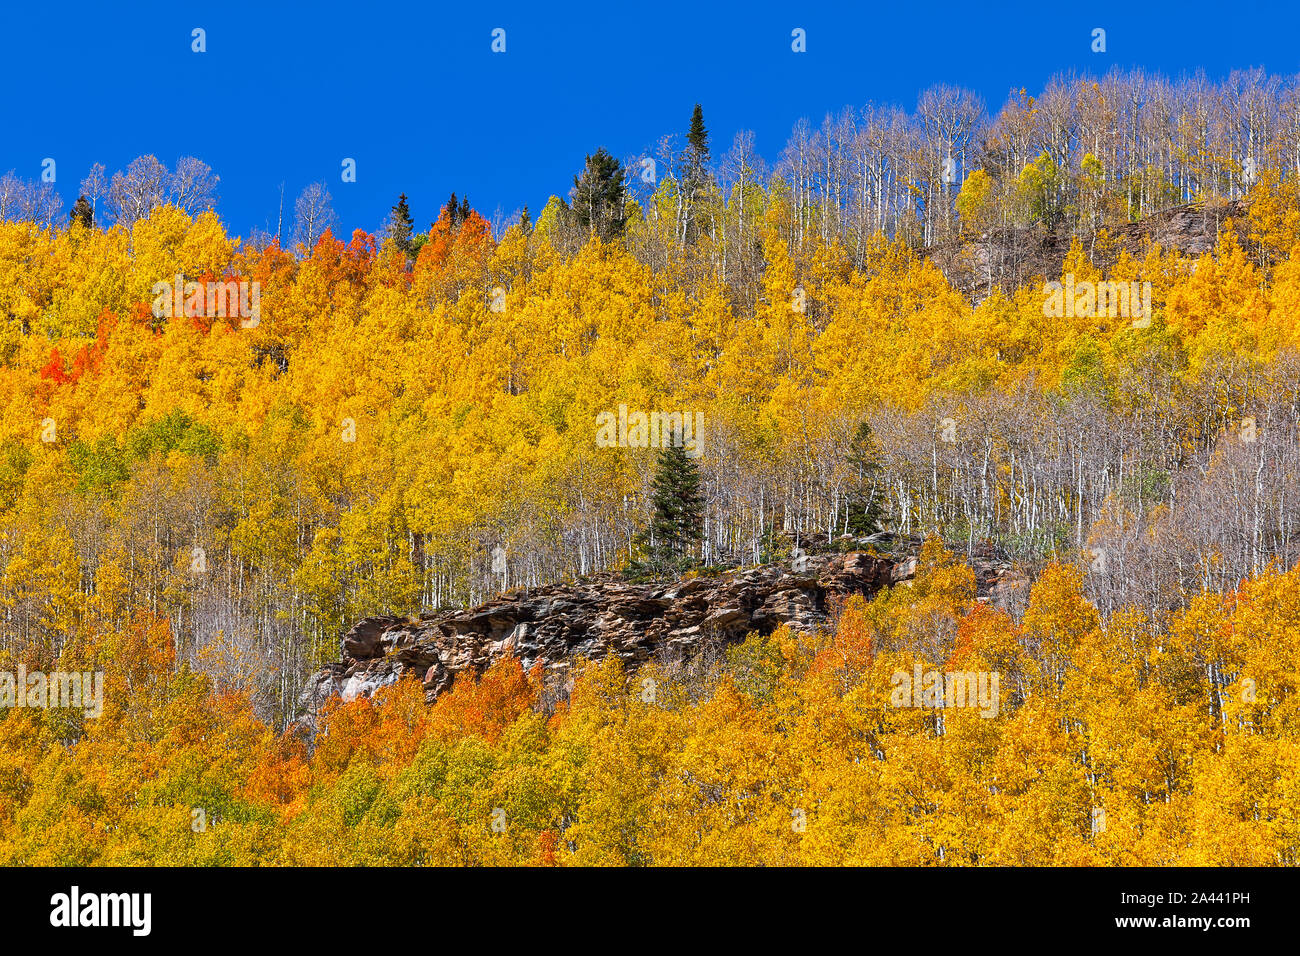 Un pino soleggiato si distingue in una foresta di alberi di Aspen giallo brillante in autunno vicino a Silverton, Colorado Foto Stock